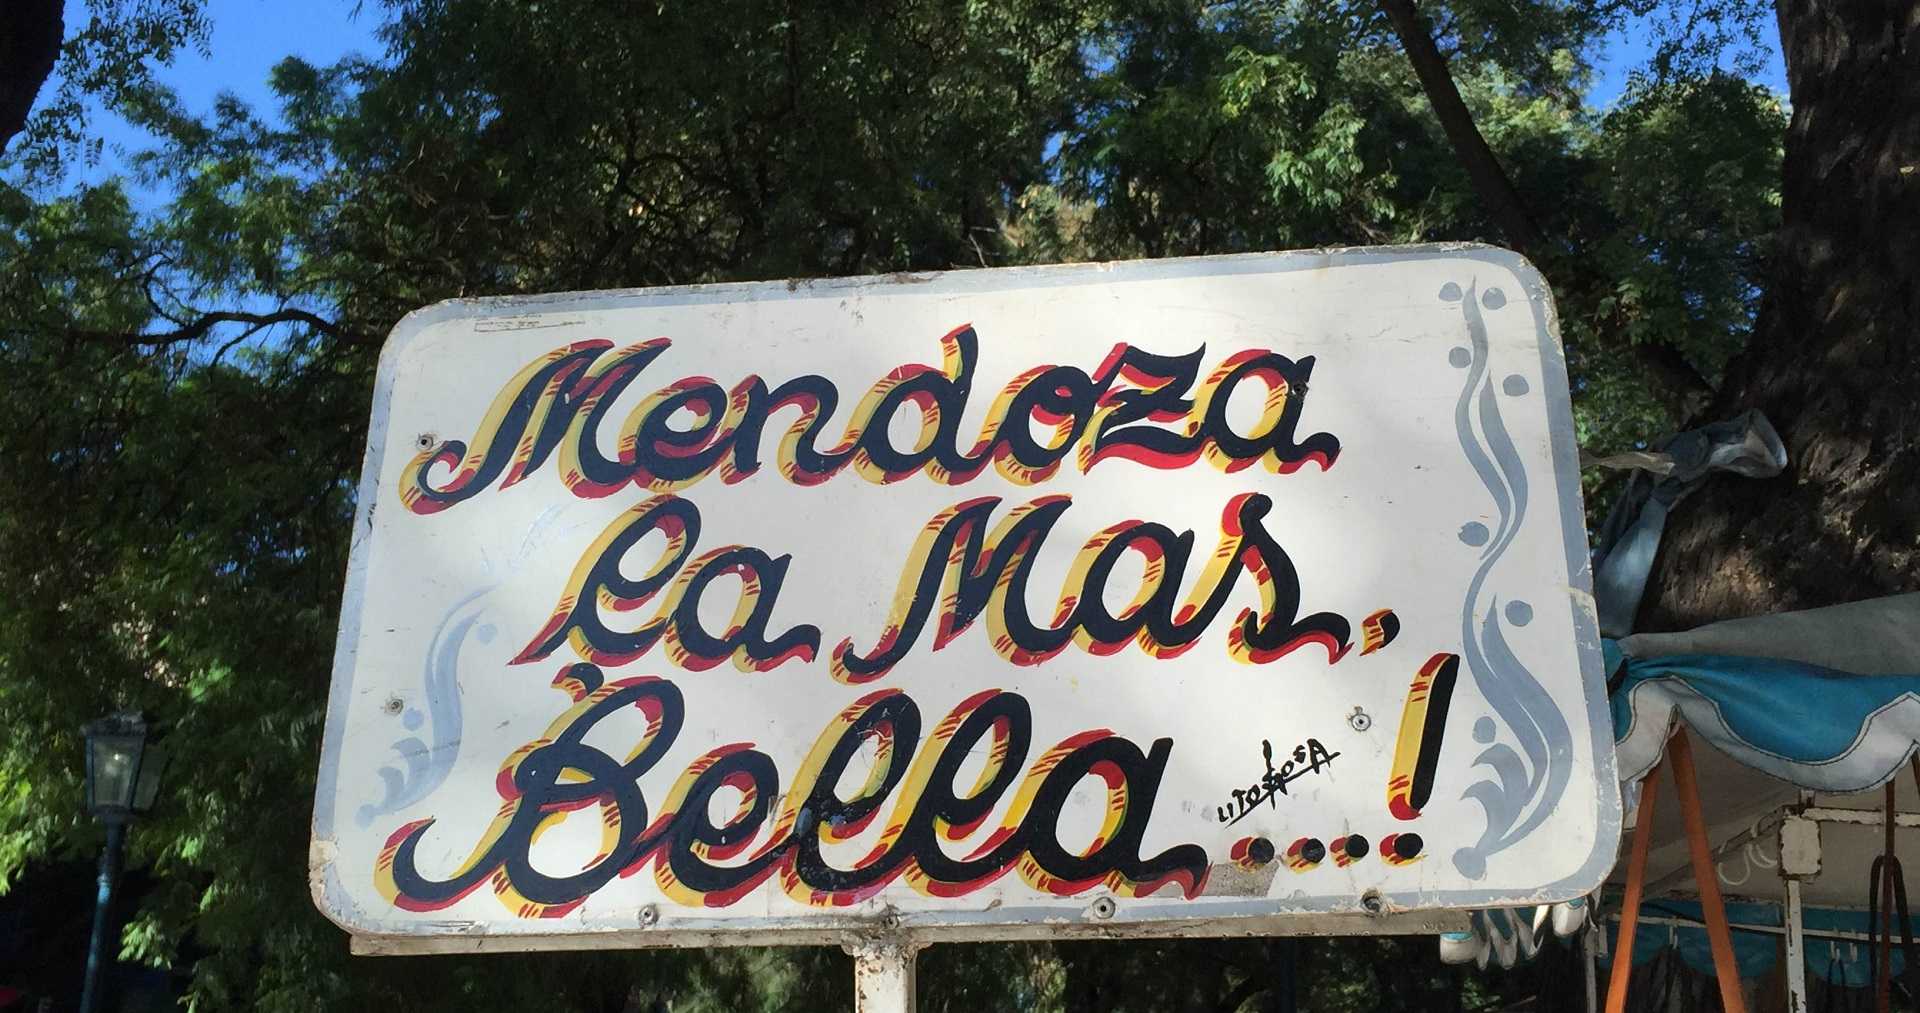 Mendoza, la mas bella